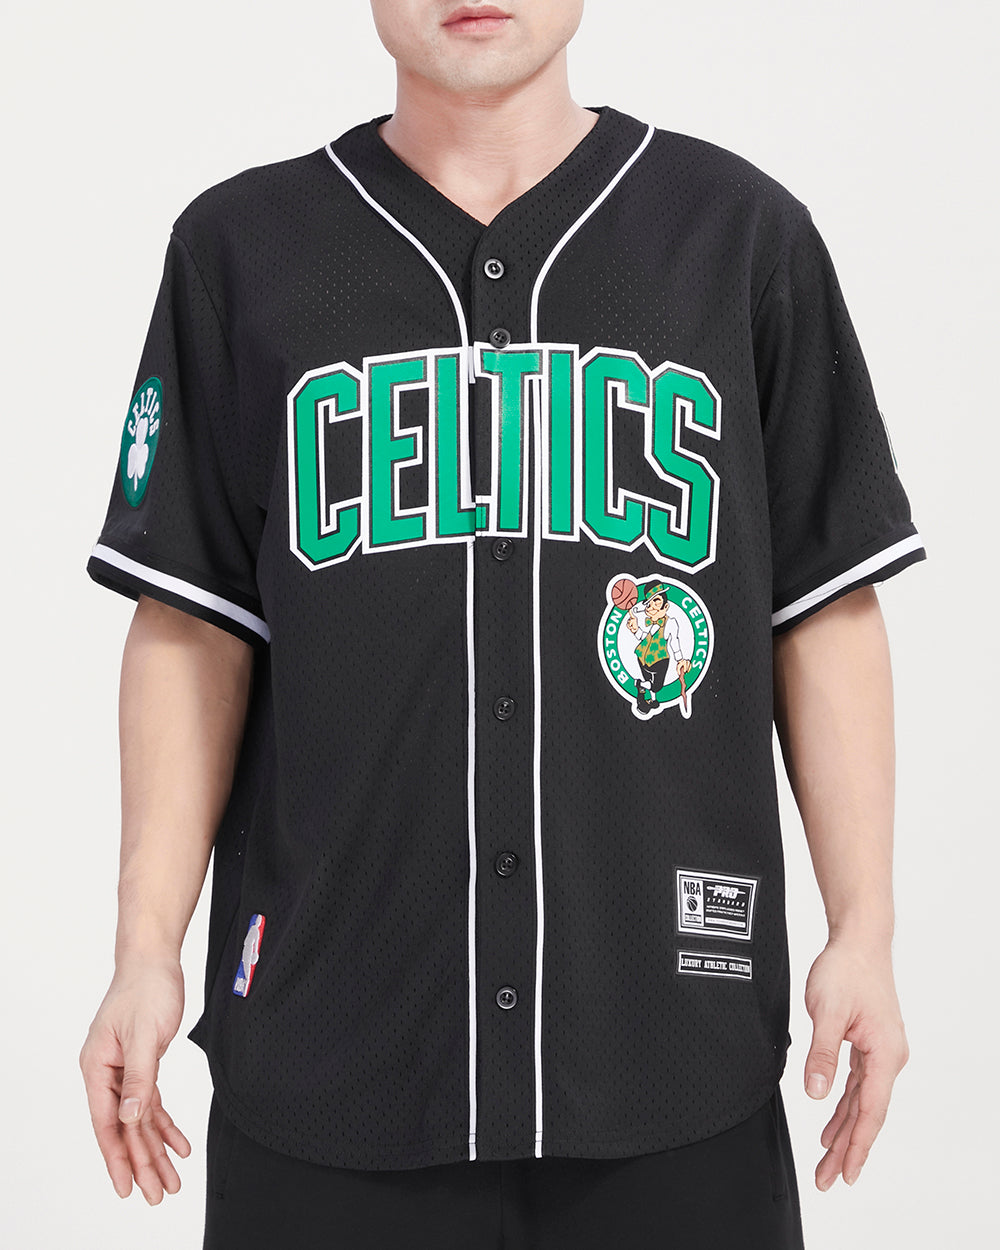 Boston Celtics Personalized Baseball Jersey Shirt - T-shirts Low Price